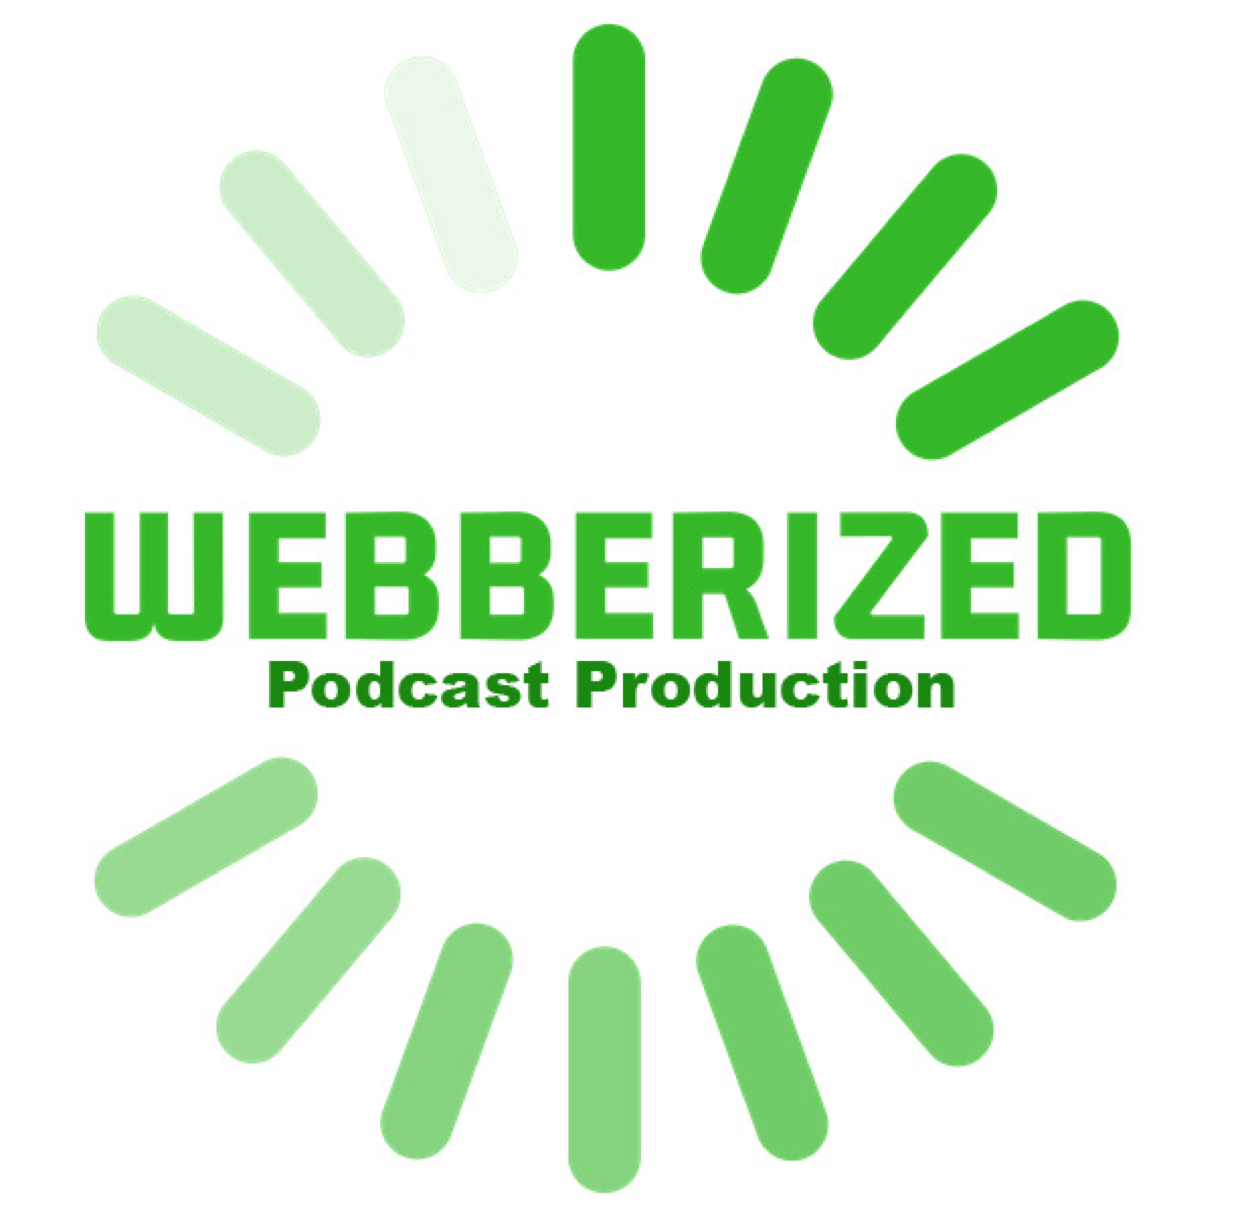 Webberized Podcasting